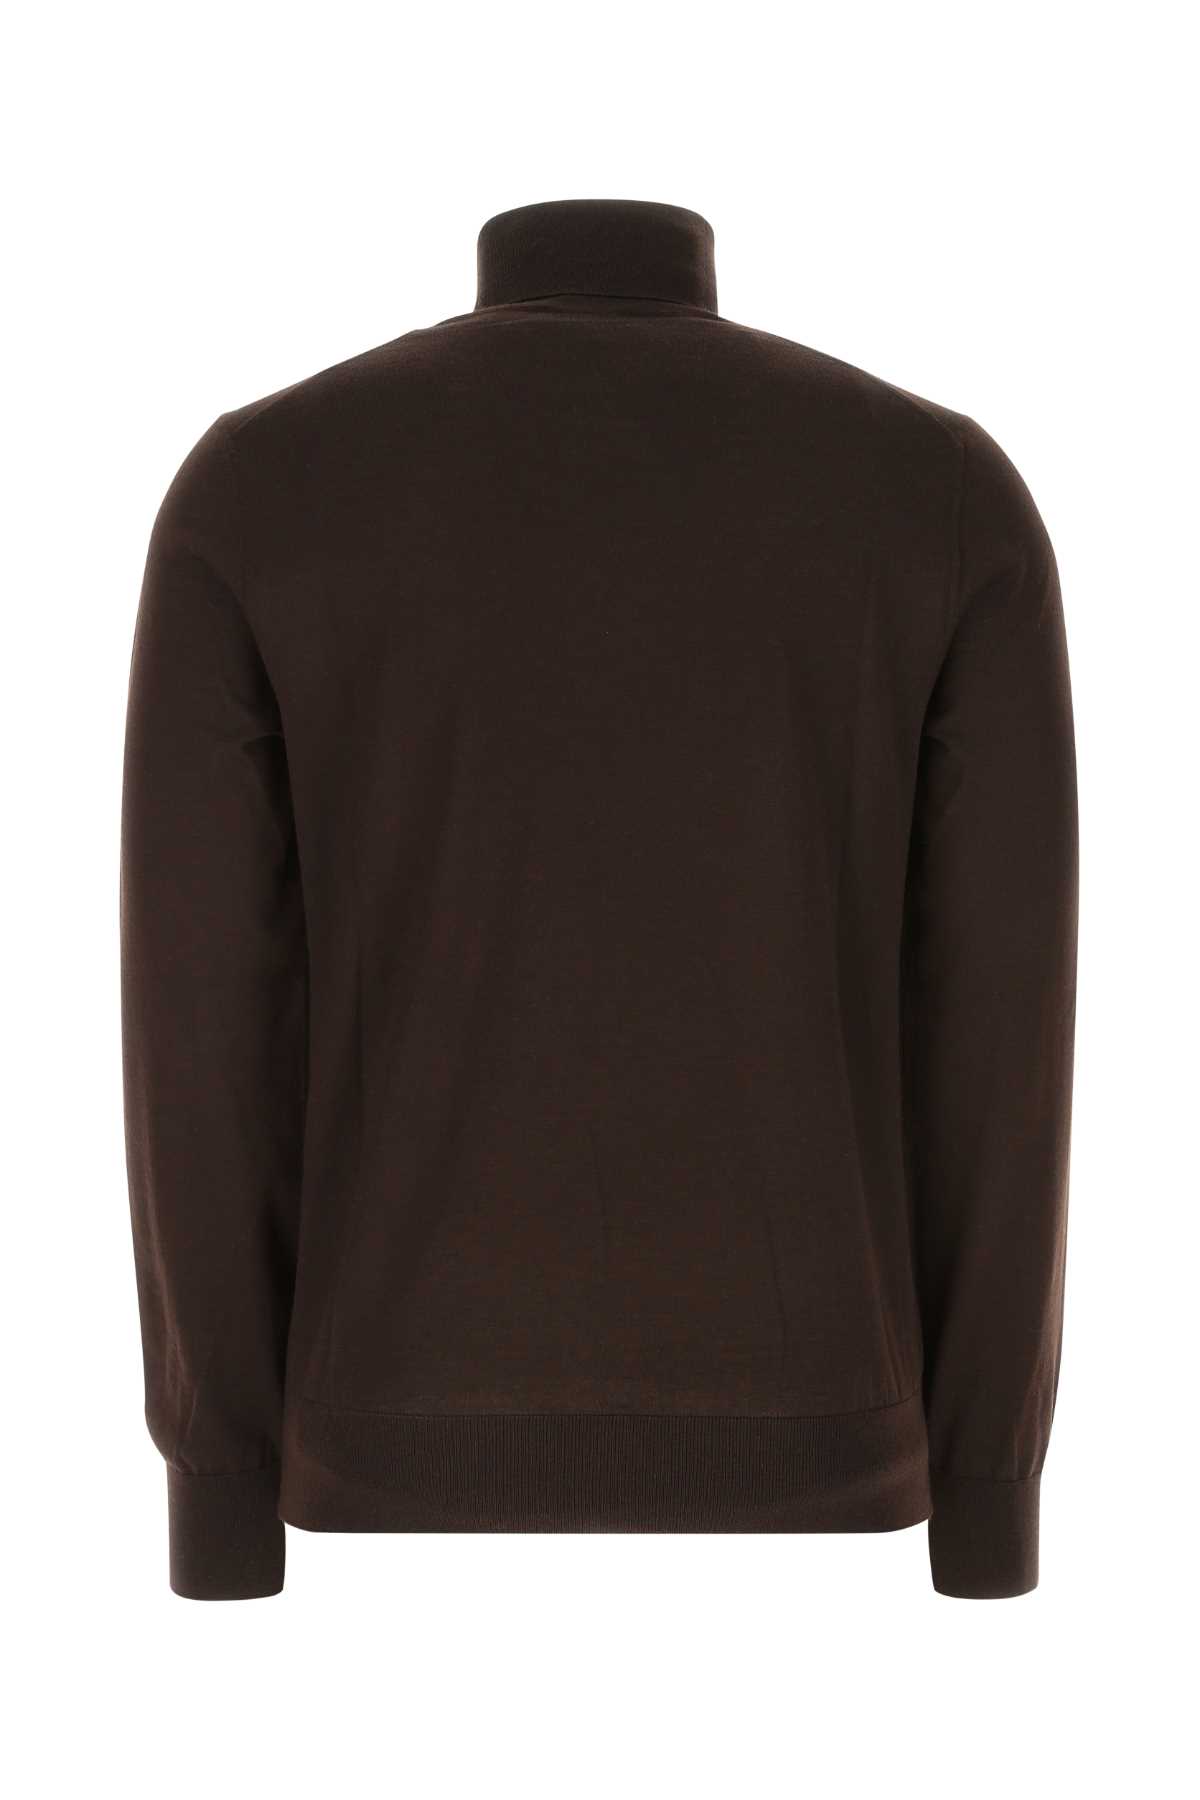 Shop Dolce & Gabbana Dark Brown Cashmere Blend Sweater In M0682